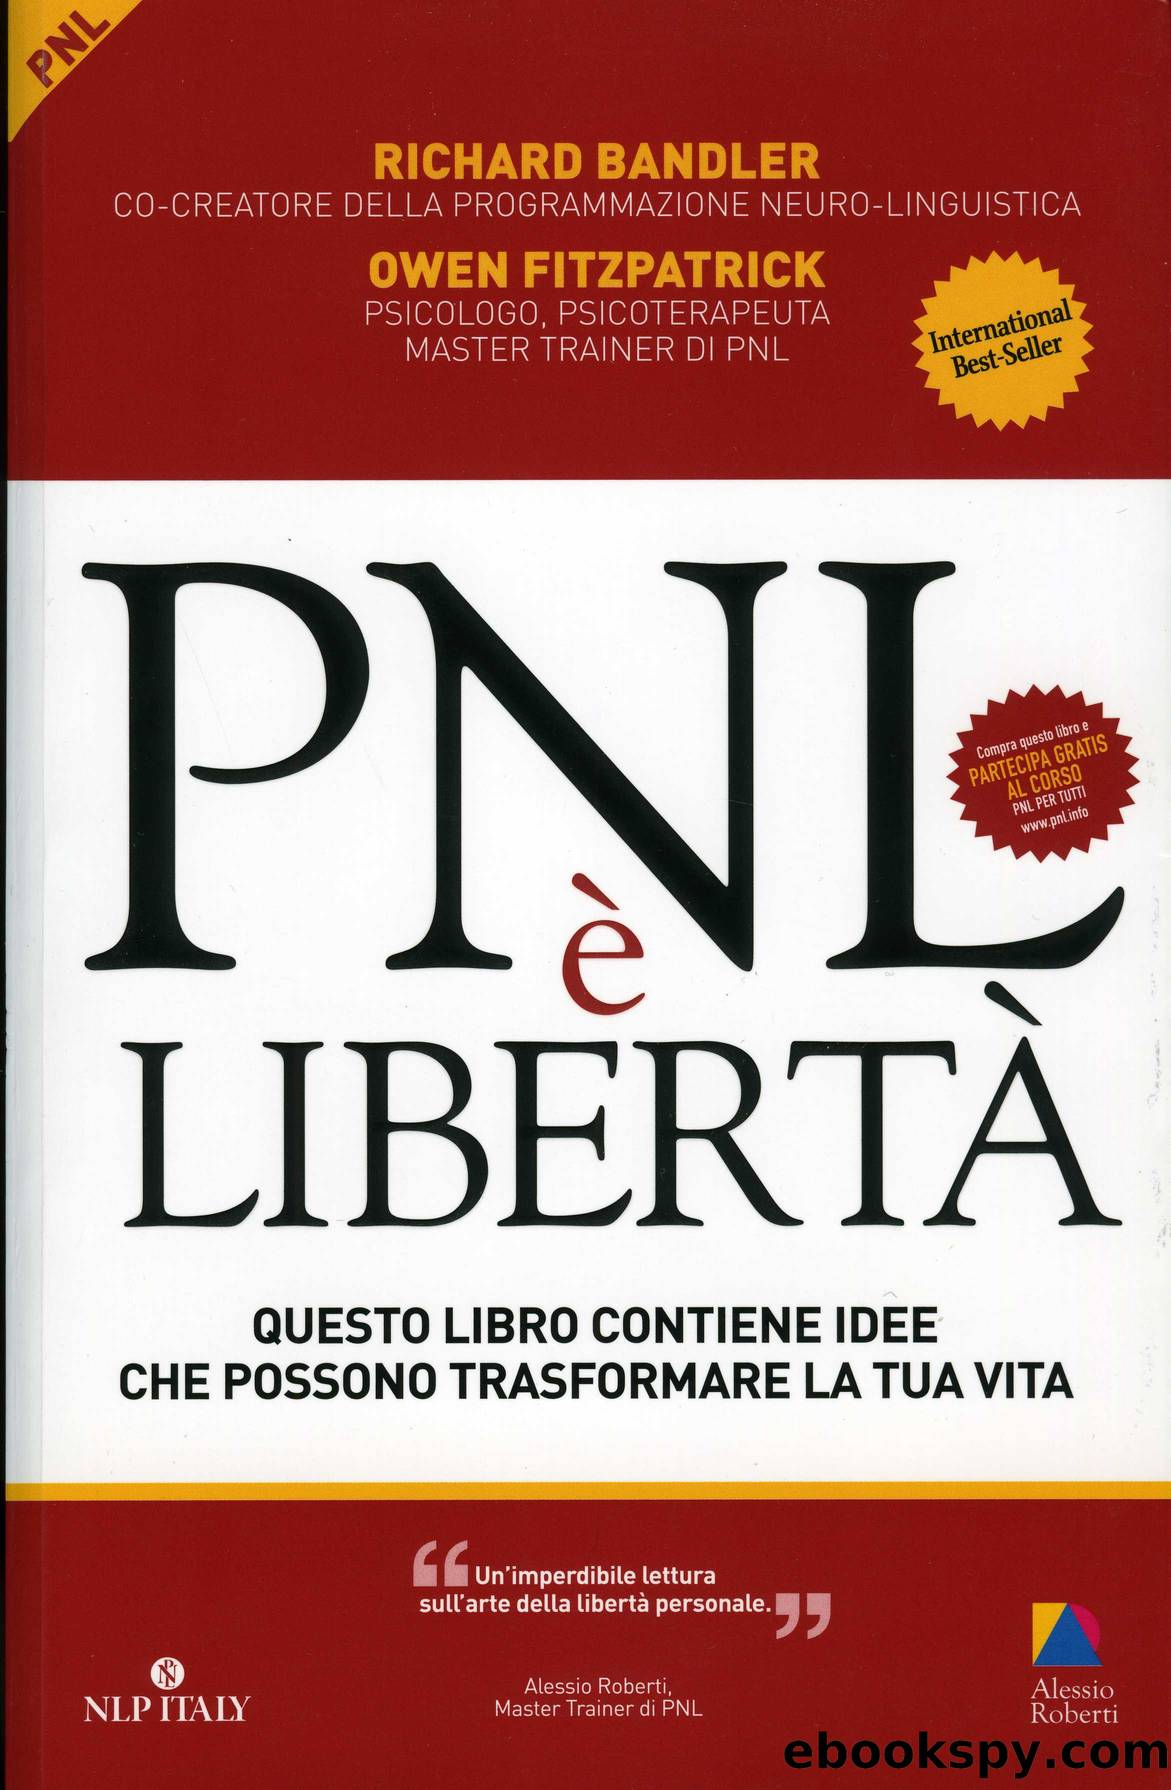 PNL Ã¨ libertÃ  by Bandler Richard & Fitzpatrick Owen